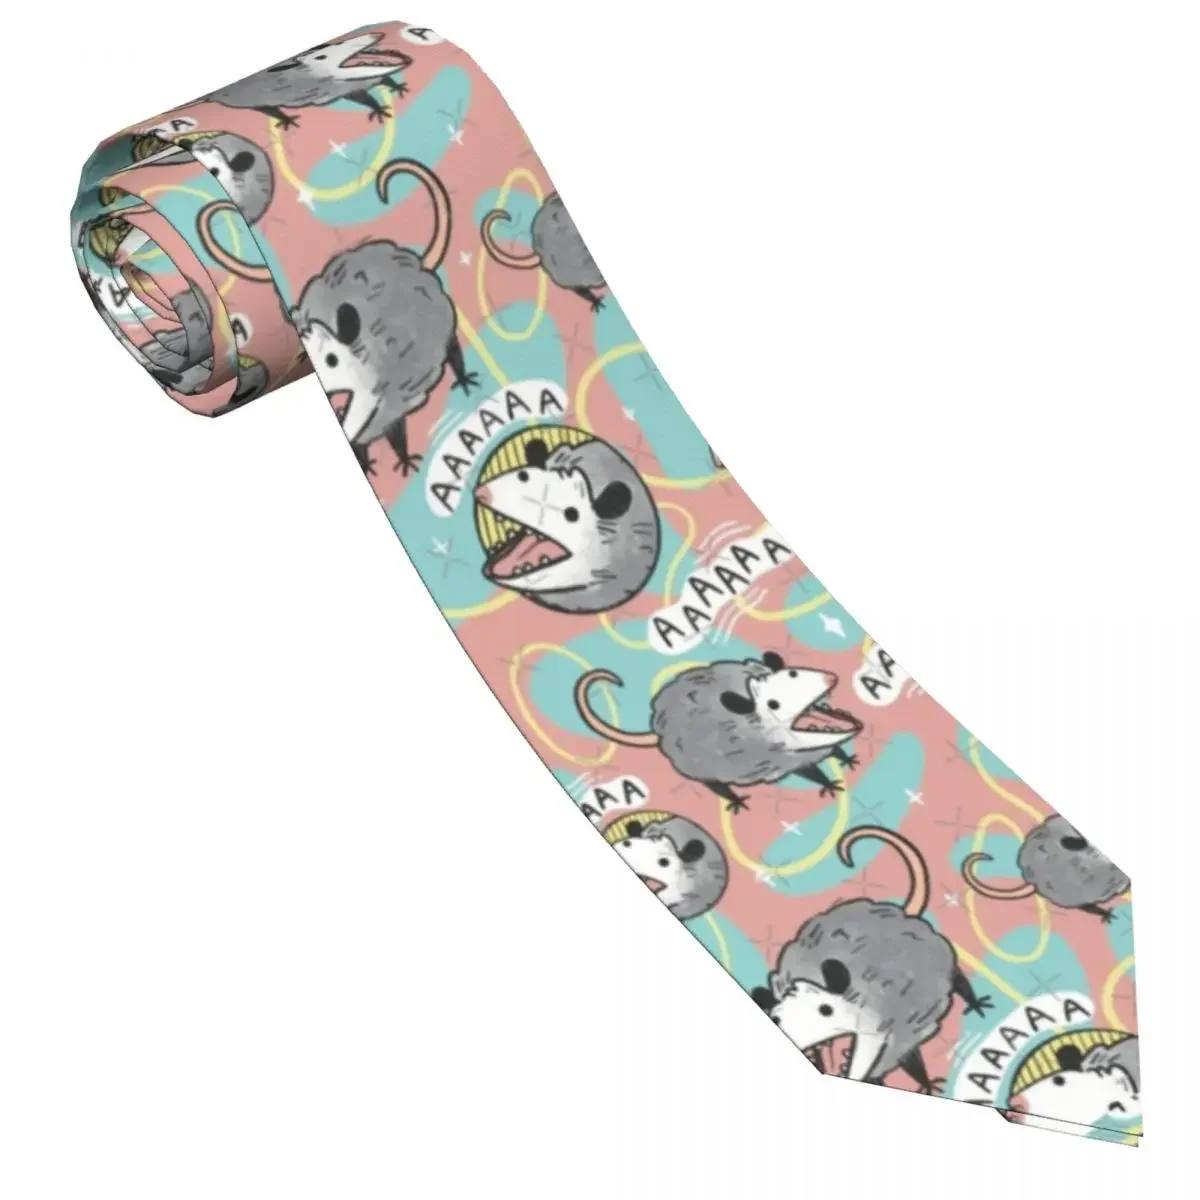 Cartoon Animal Cute Tie Anime Wedding Party Neck Ties Cute Funny Neck Tie For Men Custom DIY Collar Tie Gift